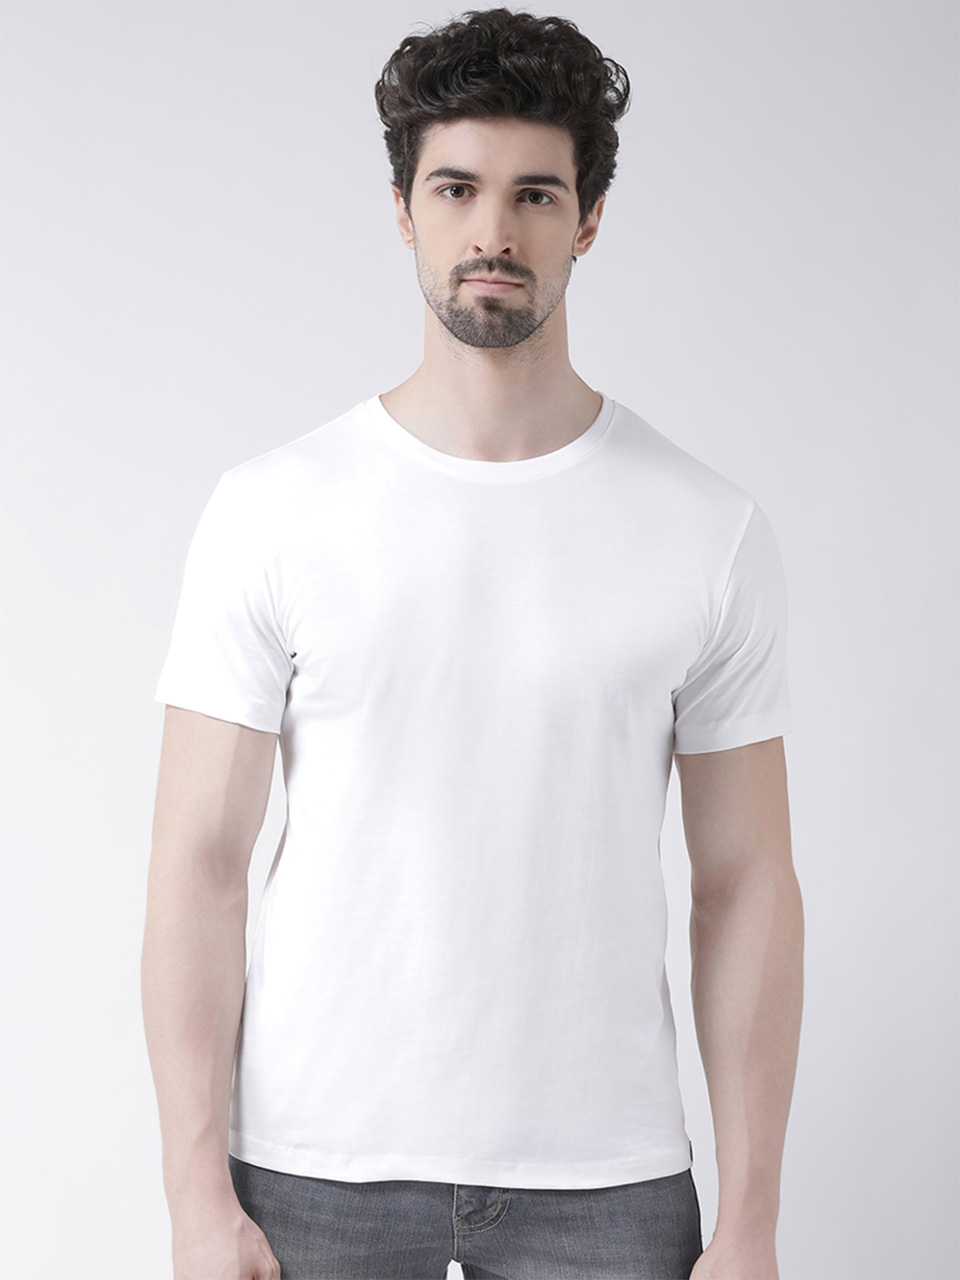 Kaspy Solid Cotton Half Sleeve T-shirts - Kaspy